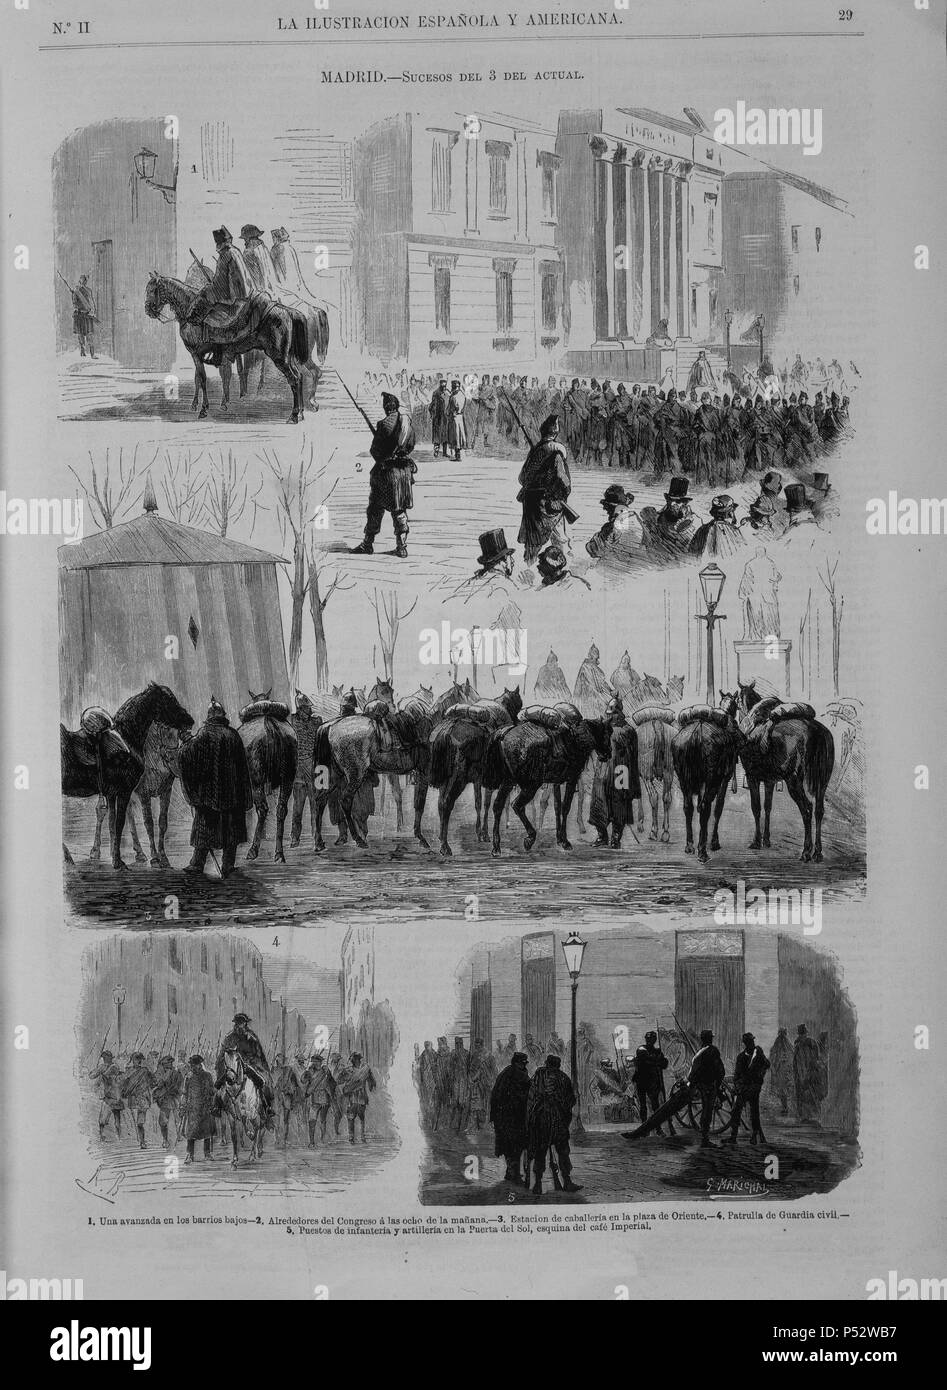 SUCESOS DEL 3 de febrero de 1874 - GOLPE DE PAVIE - ILUSTRACION ESPAÑOLA Y AMERICANA. Auteur : G. Marichal (xixe s.). Emplacement : SENADO-BIBLIOTECA-COLECCION. Banque D'Images